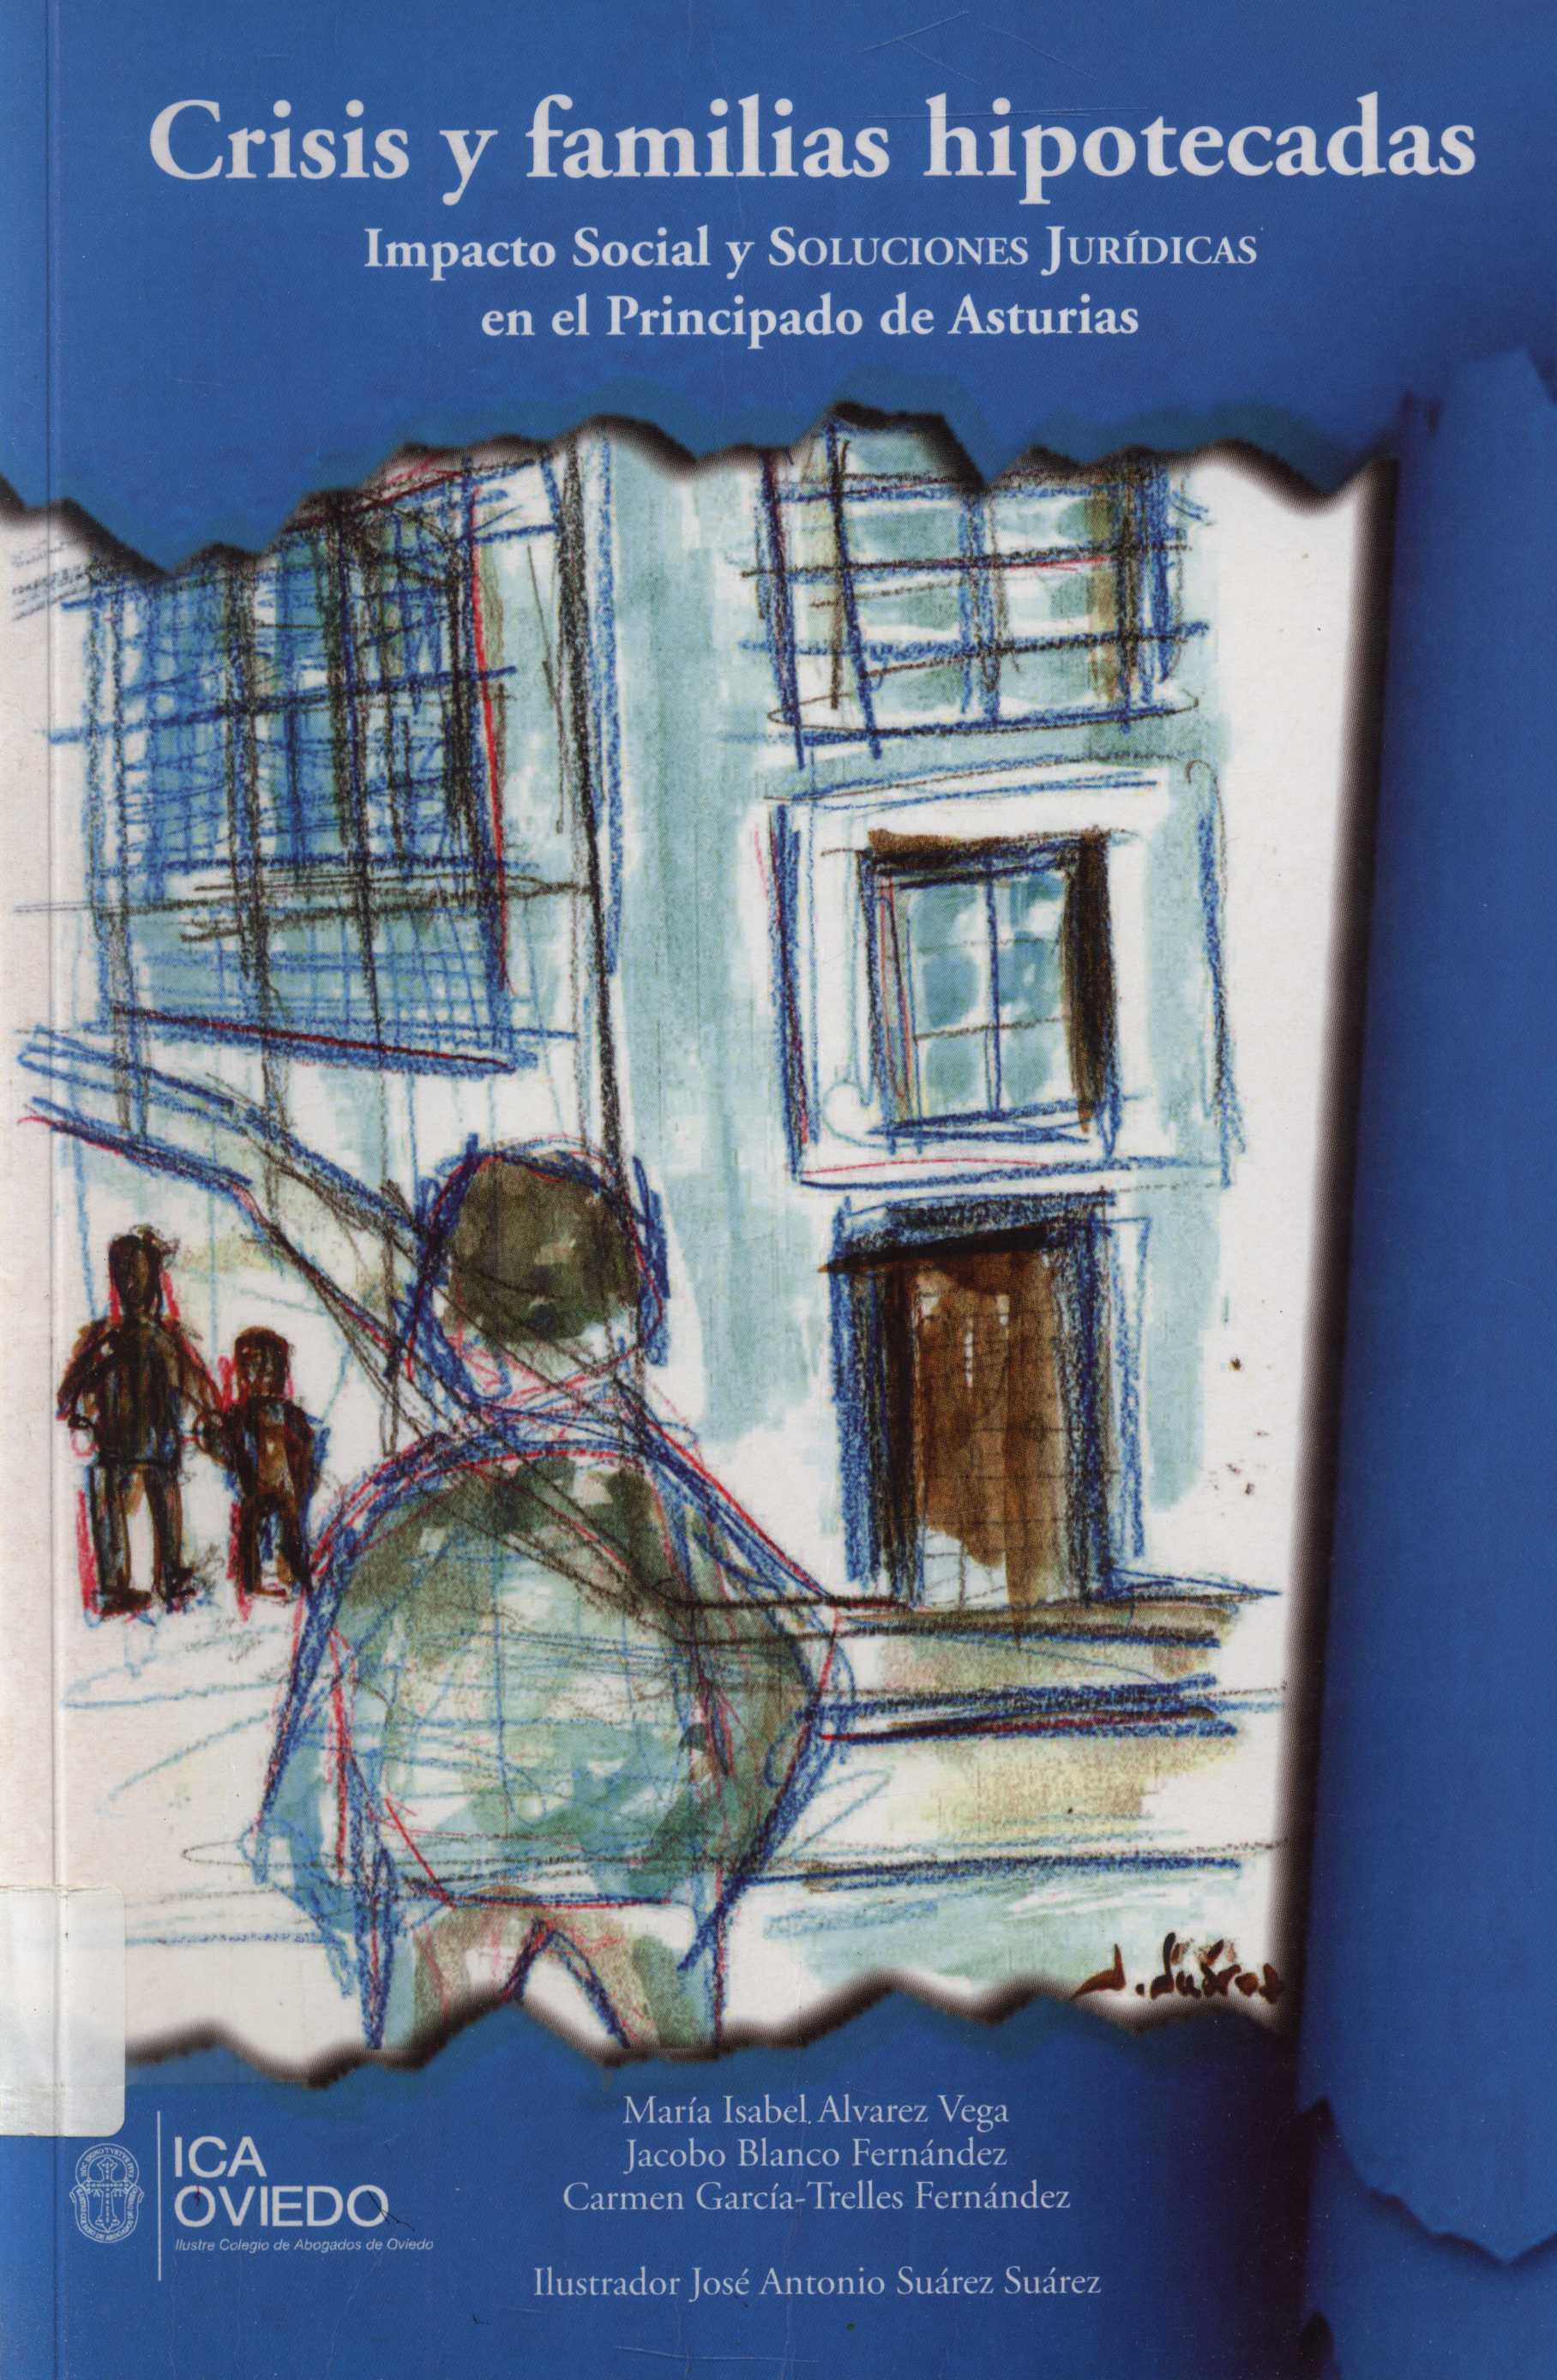 Imagen de portada del libro Crisis y familias hipotecadas